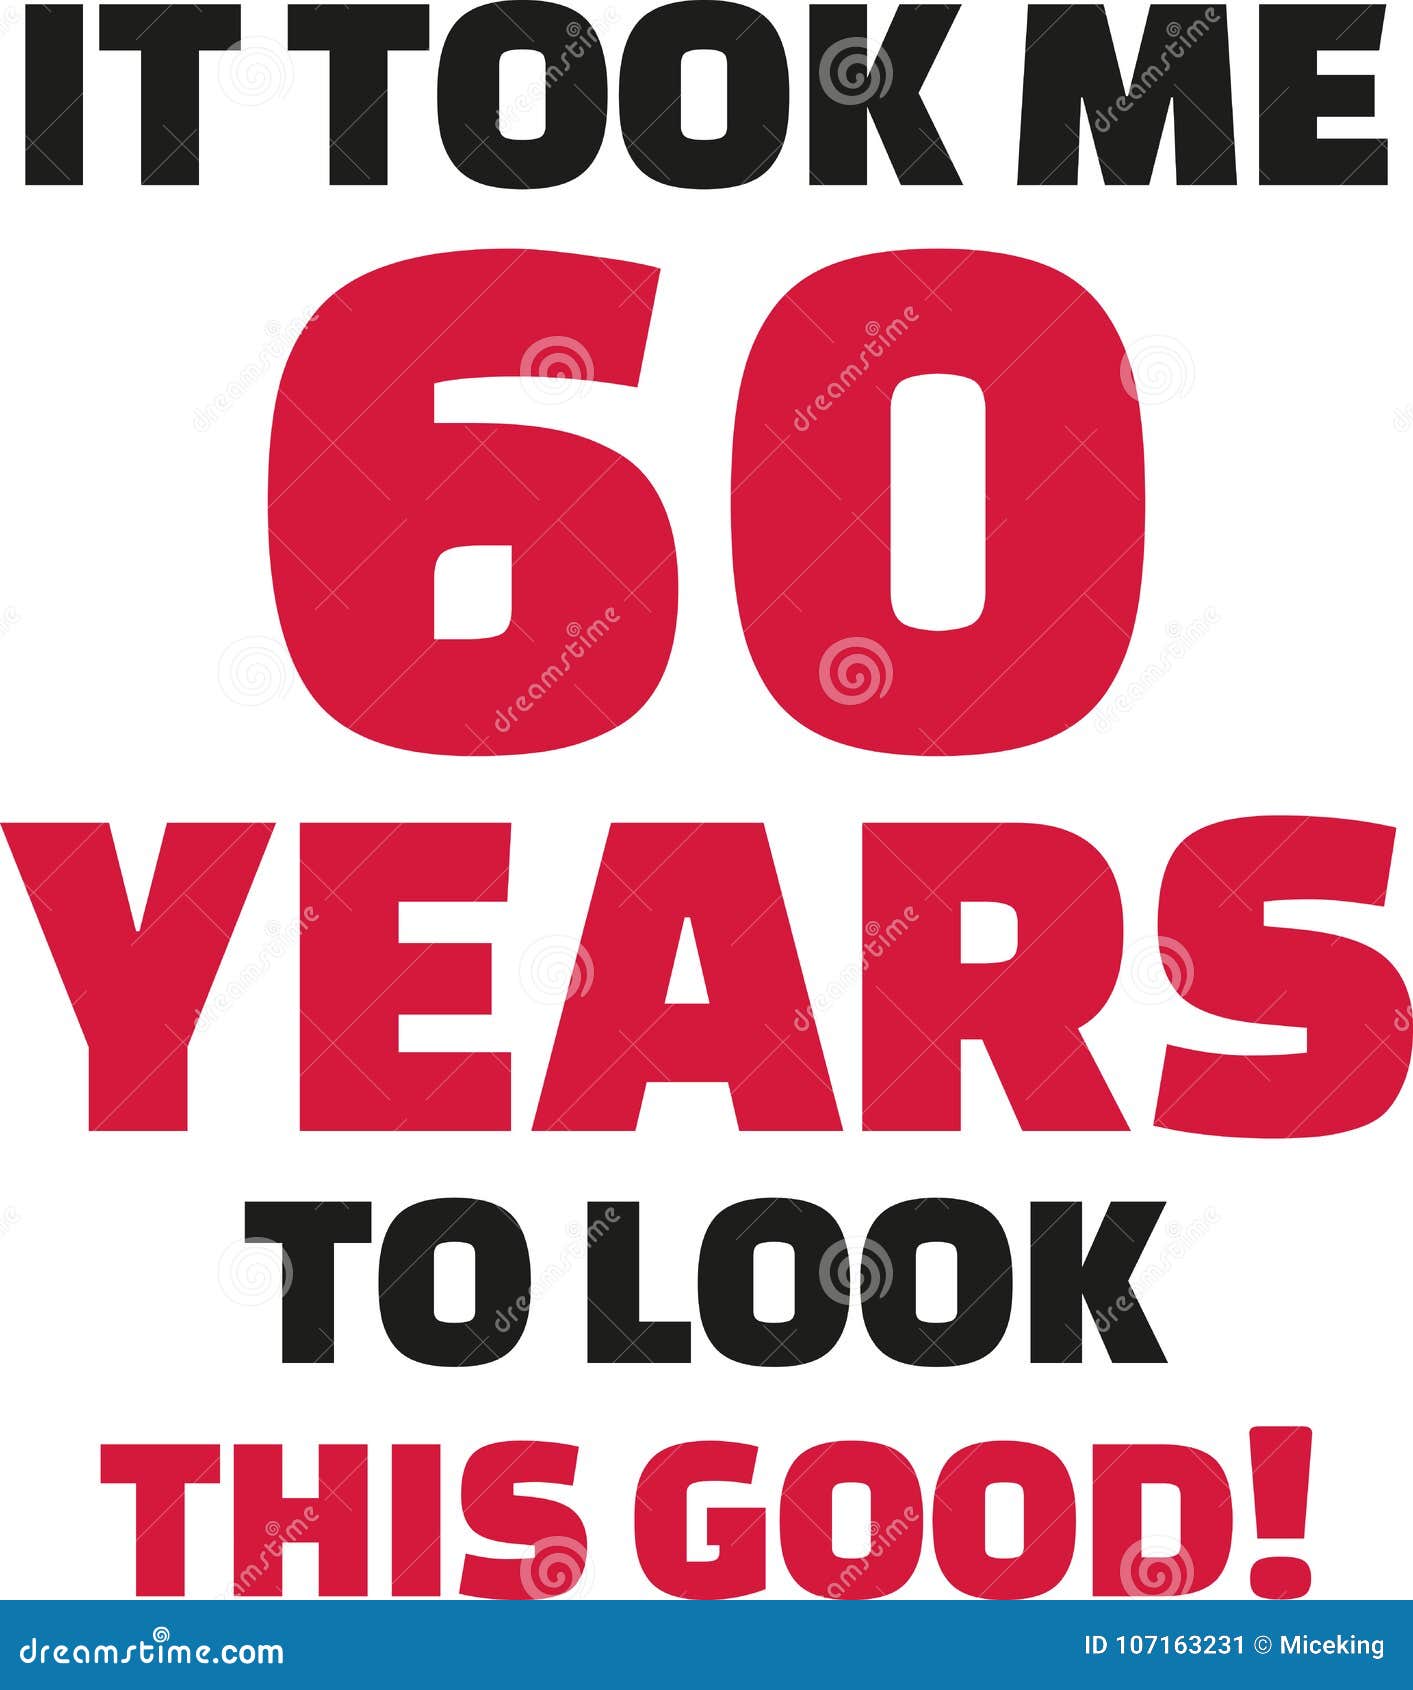 Verwonderlijk It Took Me 60 Years To Look This Good - 60th Birthday Stock Vector PG-16